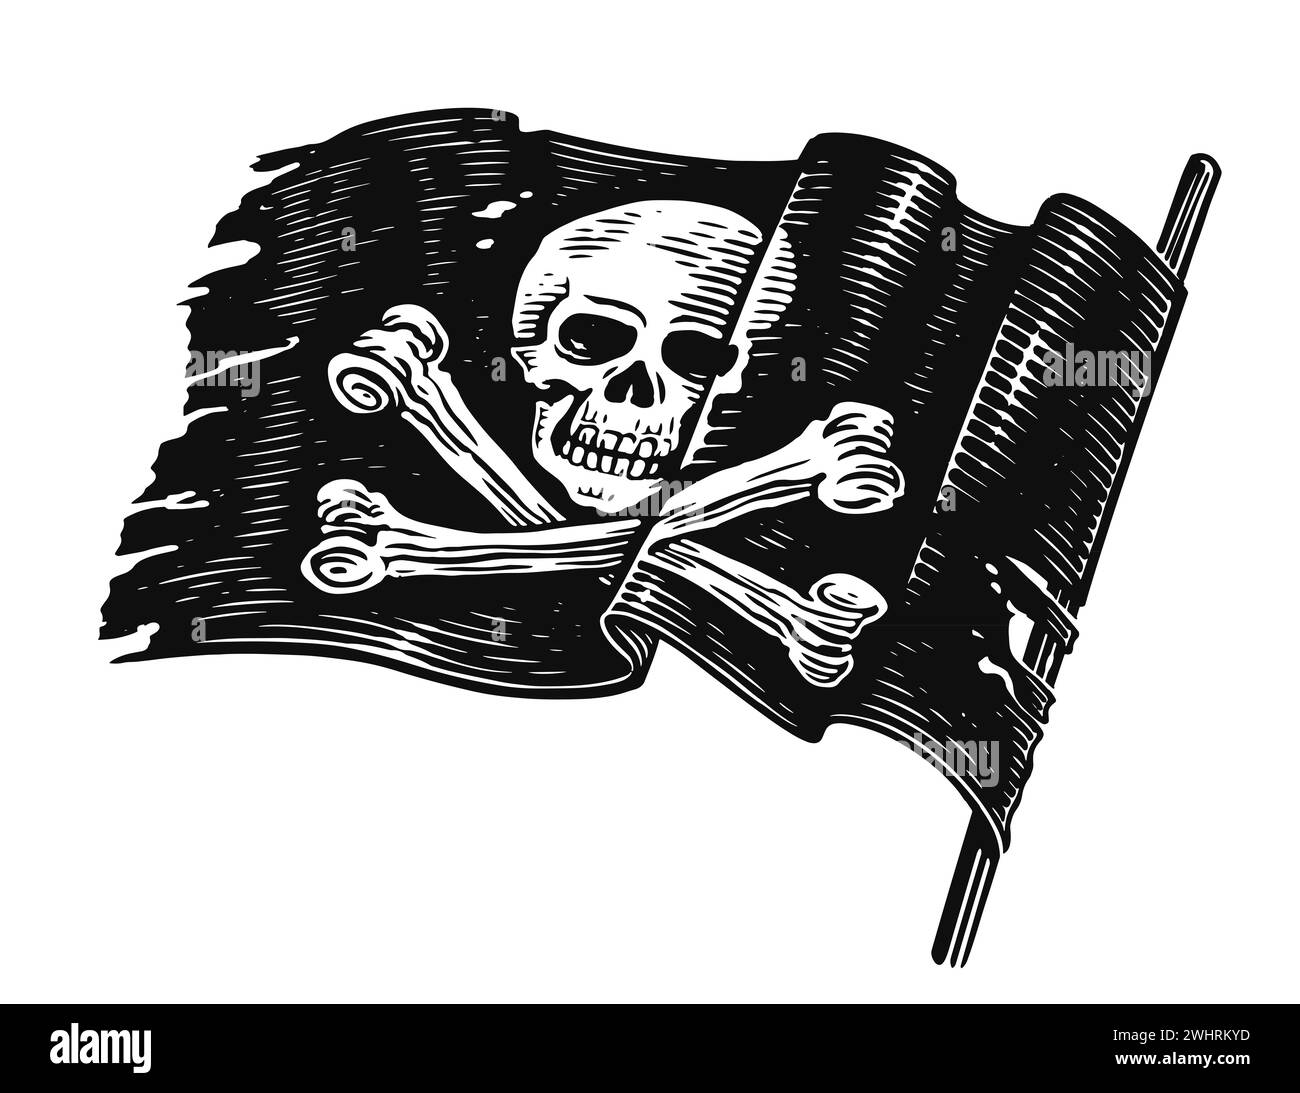 Bandiera dei pirati con cranio e ossa incrociate. Striscione Jolly Roger disegnato a mano. Disegna lo stile vintage dell'incisione illustrativa Foto Stock